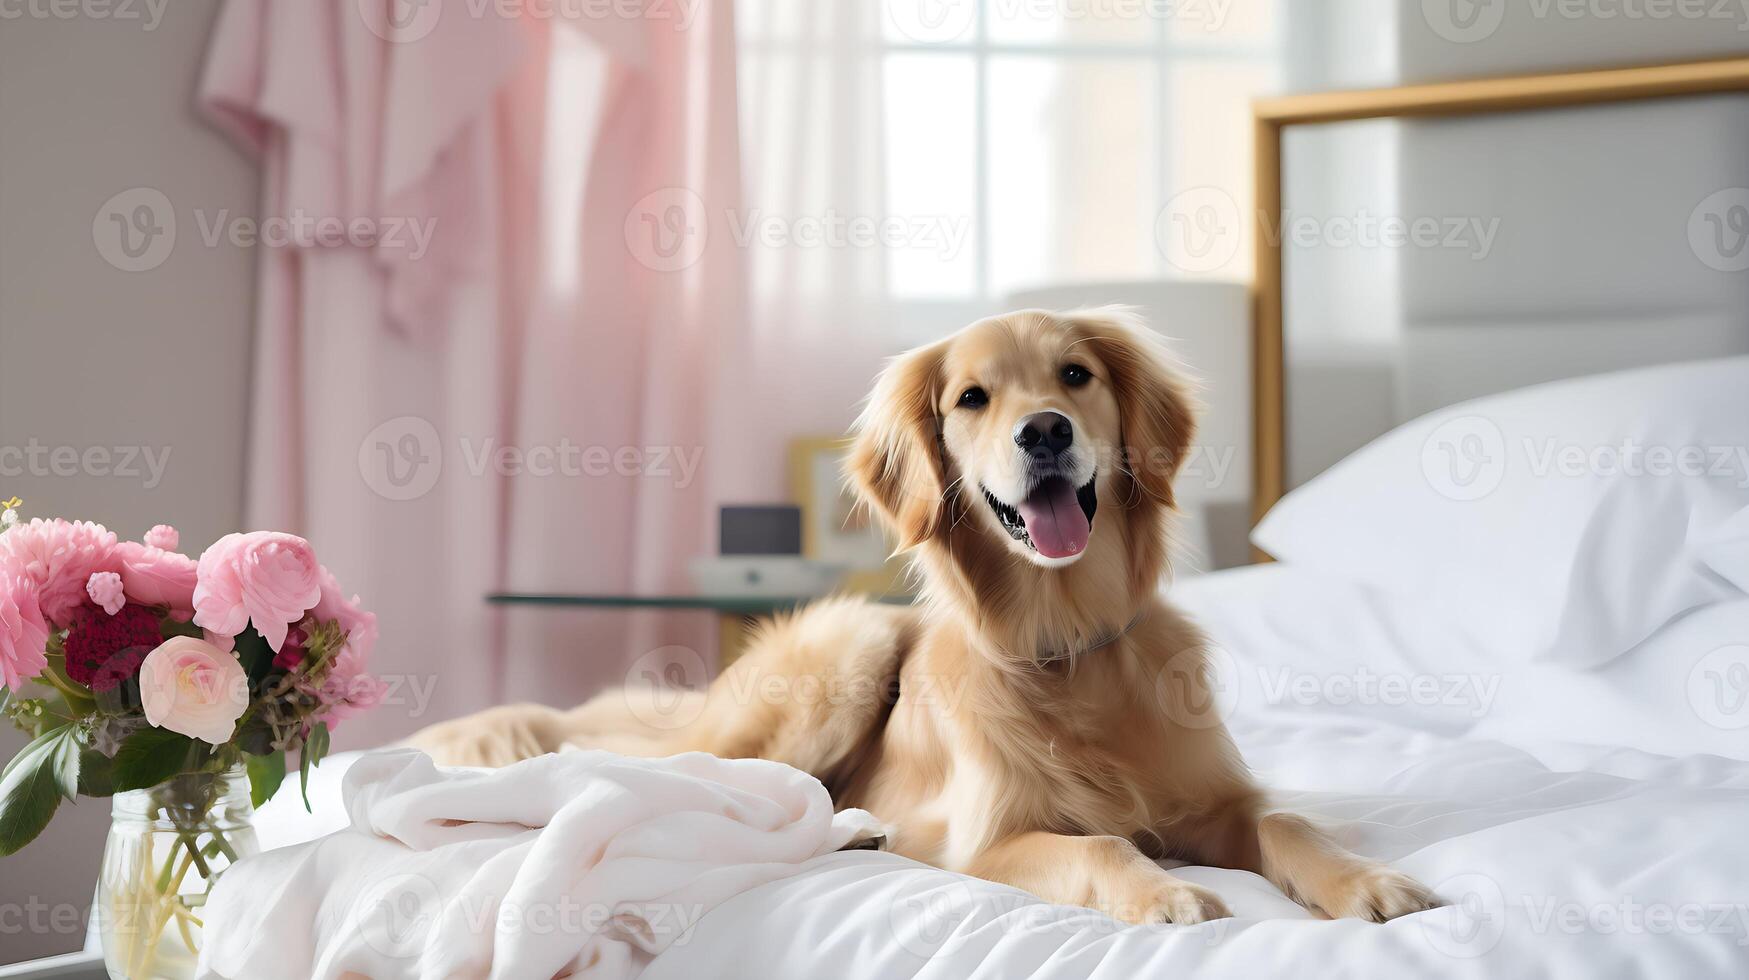 mascotas simpático hotel o hogar habitación. dorado perdiguero perrito perro en lujoso hotel descansando en cama. de viaje con mascotas. emocional apoyo concepto. foto